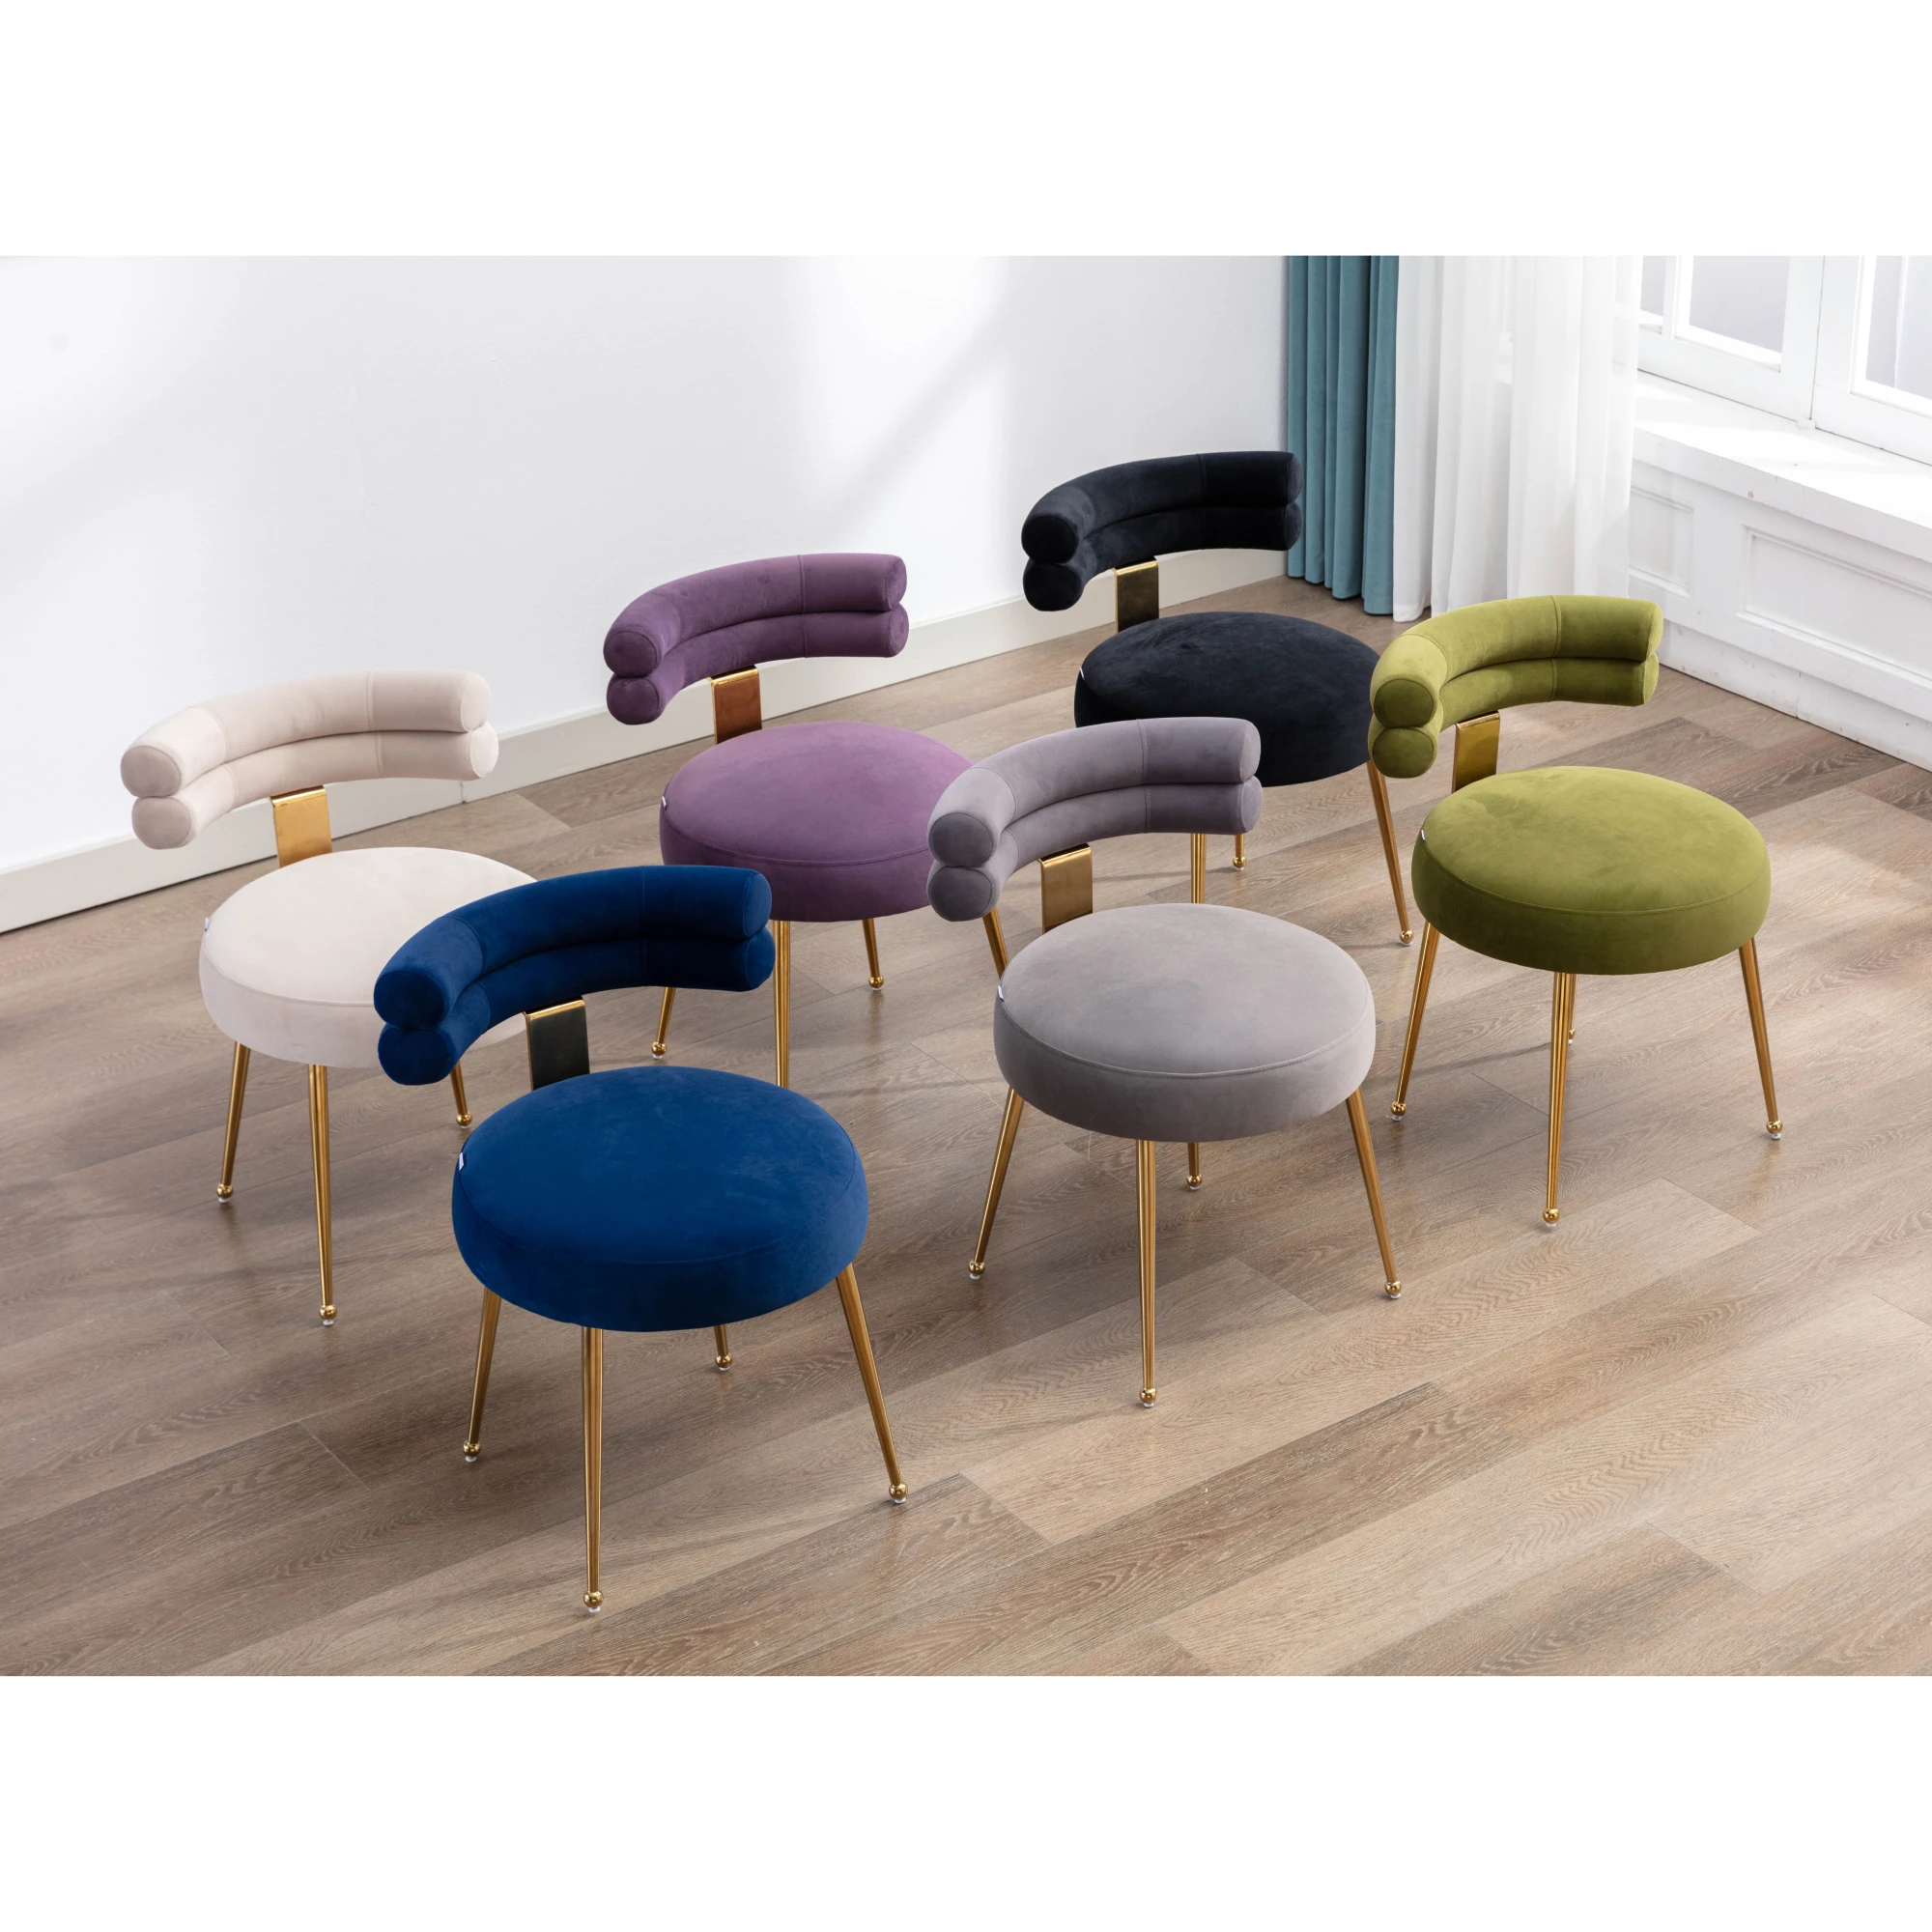 [Срочная распродажа] 6 цветов обеденных стульев для отдыха / Accent Chair [US-W]